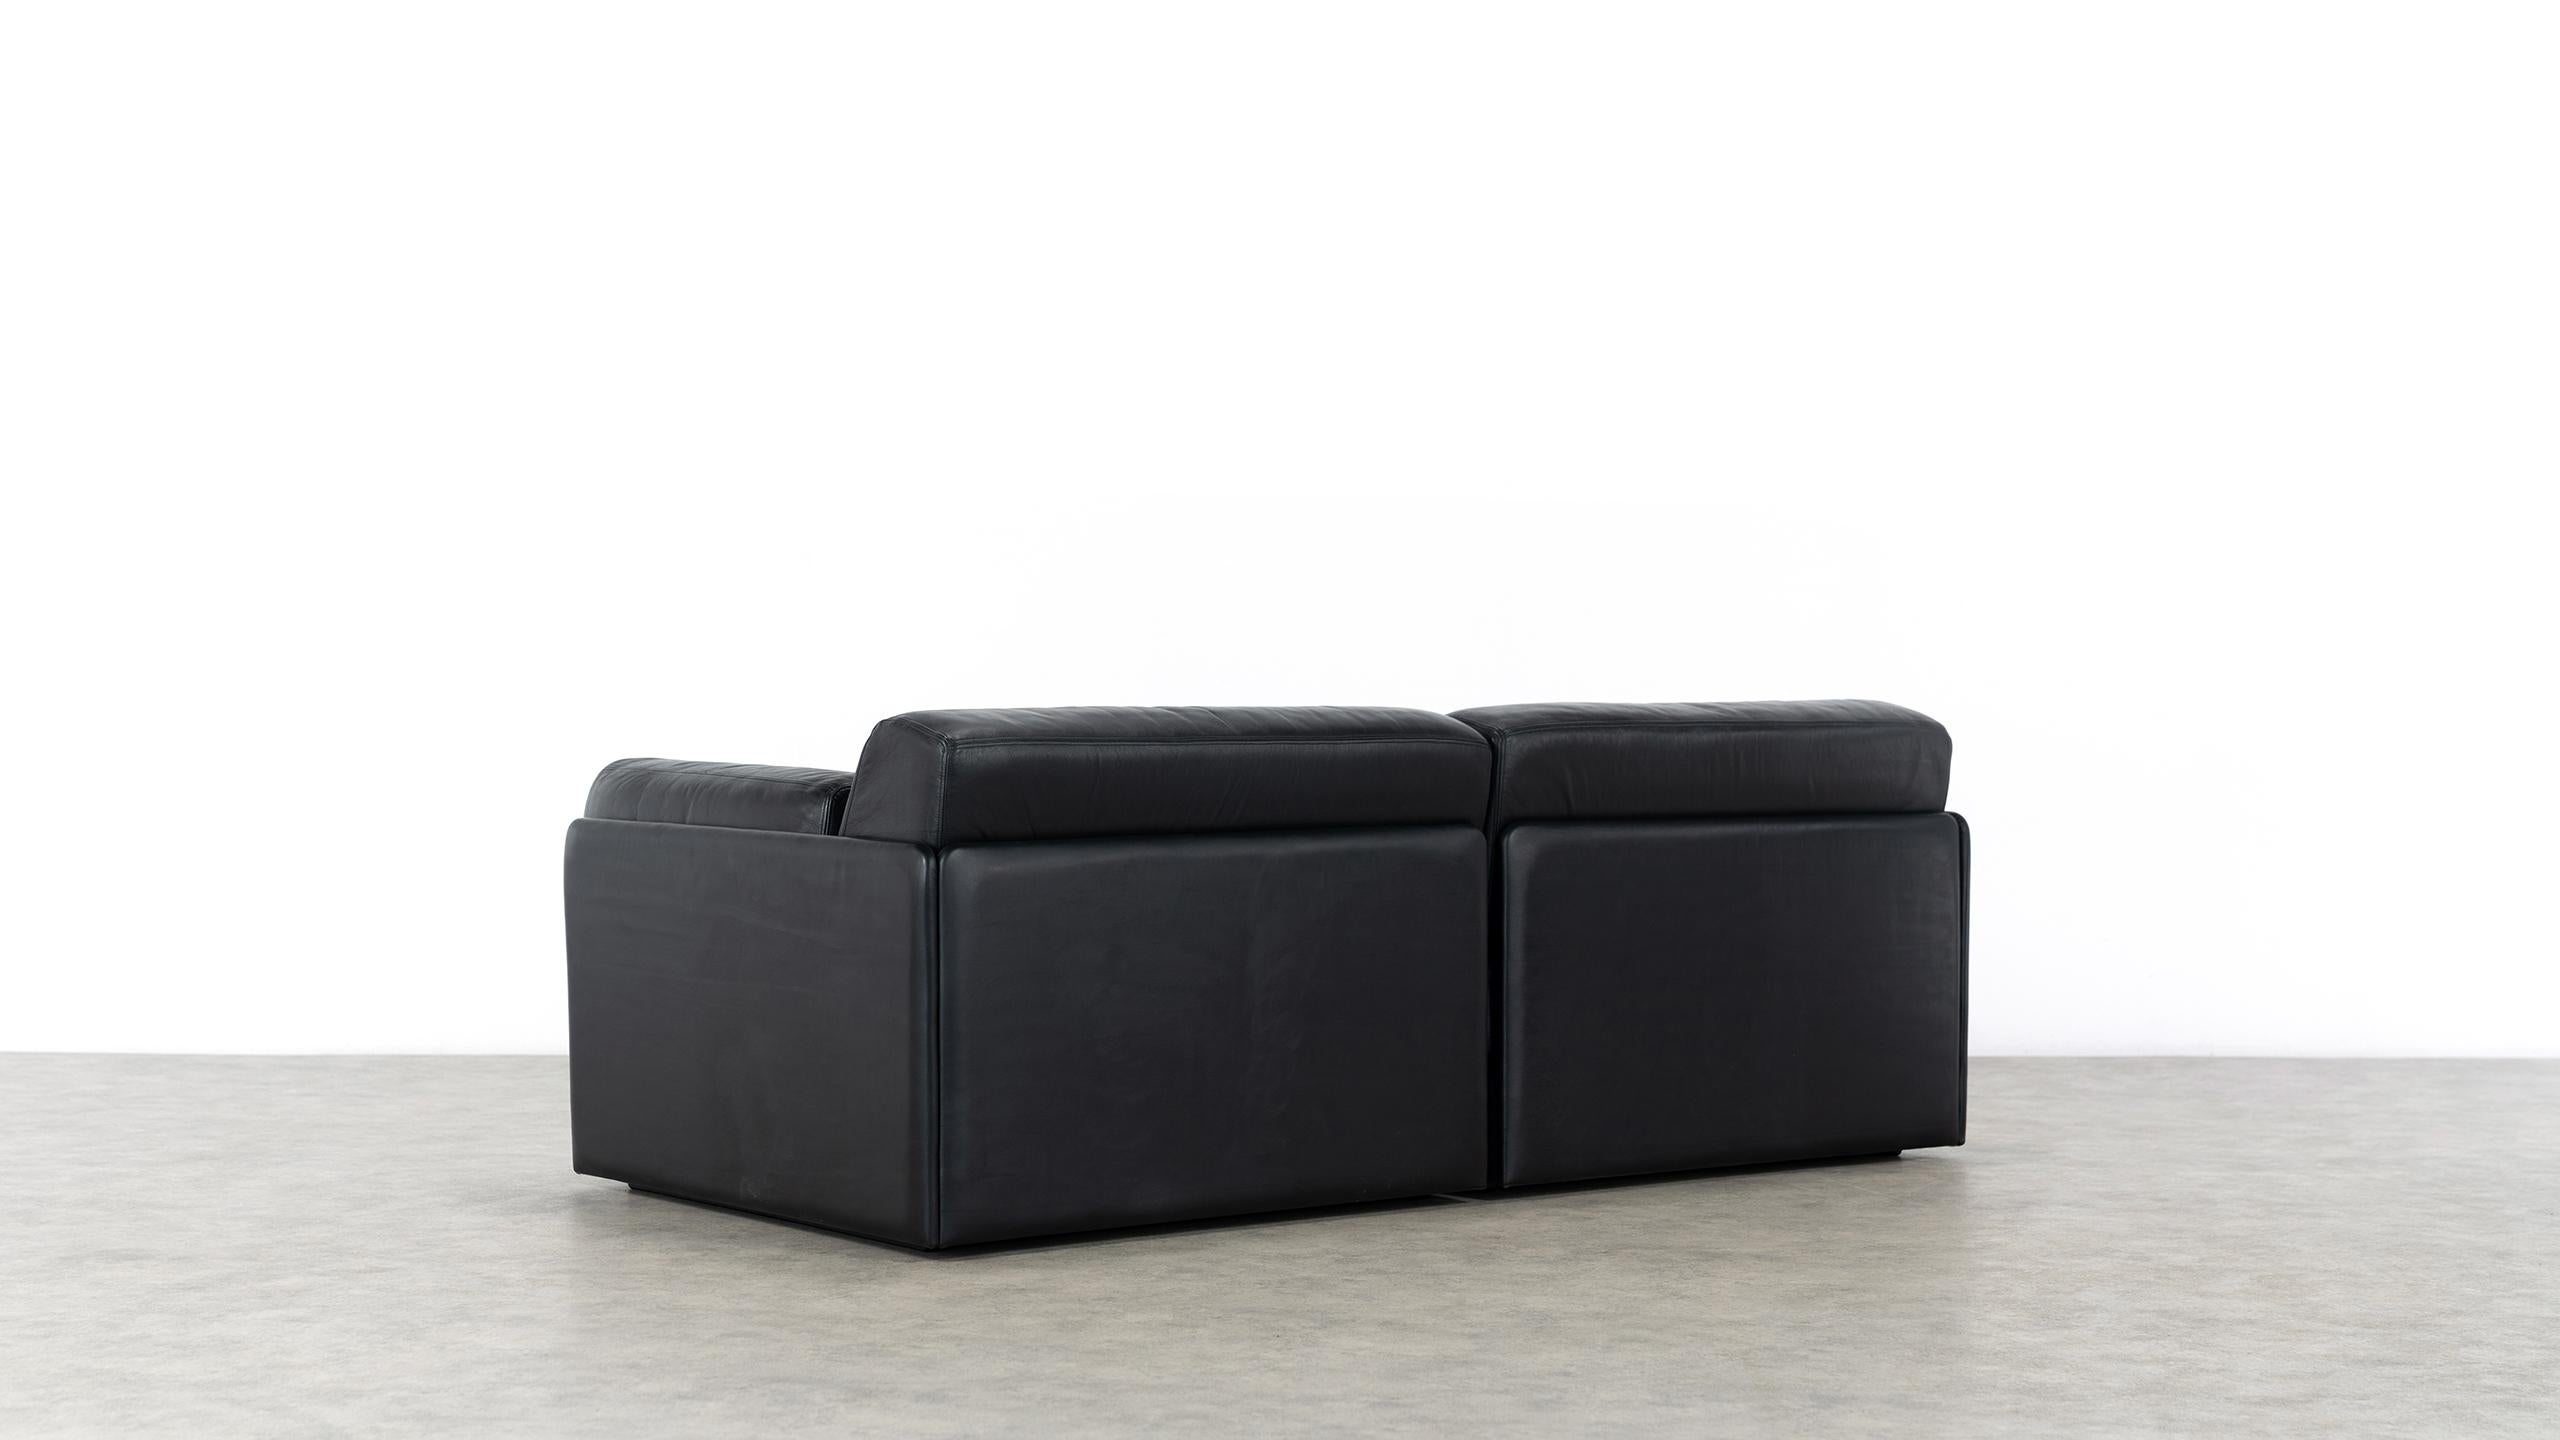 De Sede Ds76, Sofa & Daybed in Black Leather, 1972 by De Sede Design Team 6